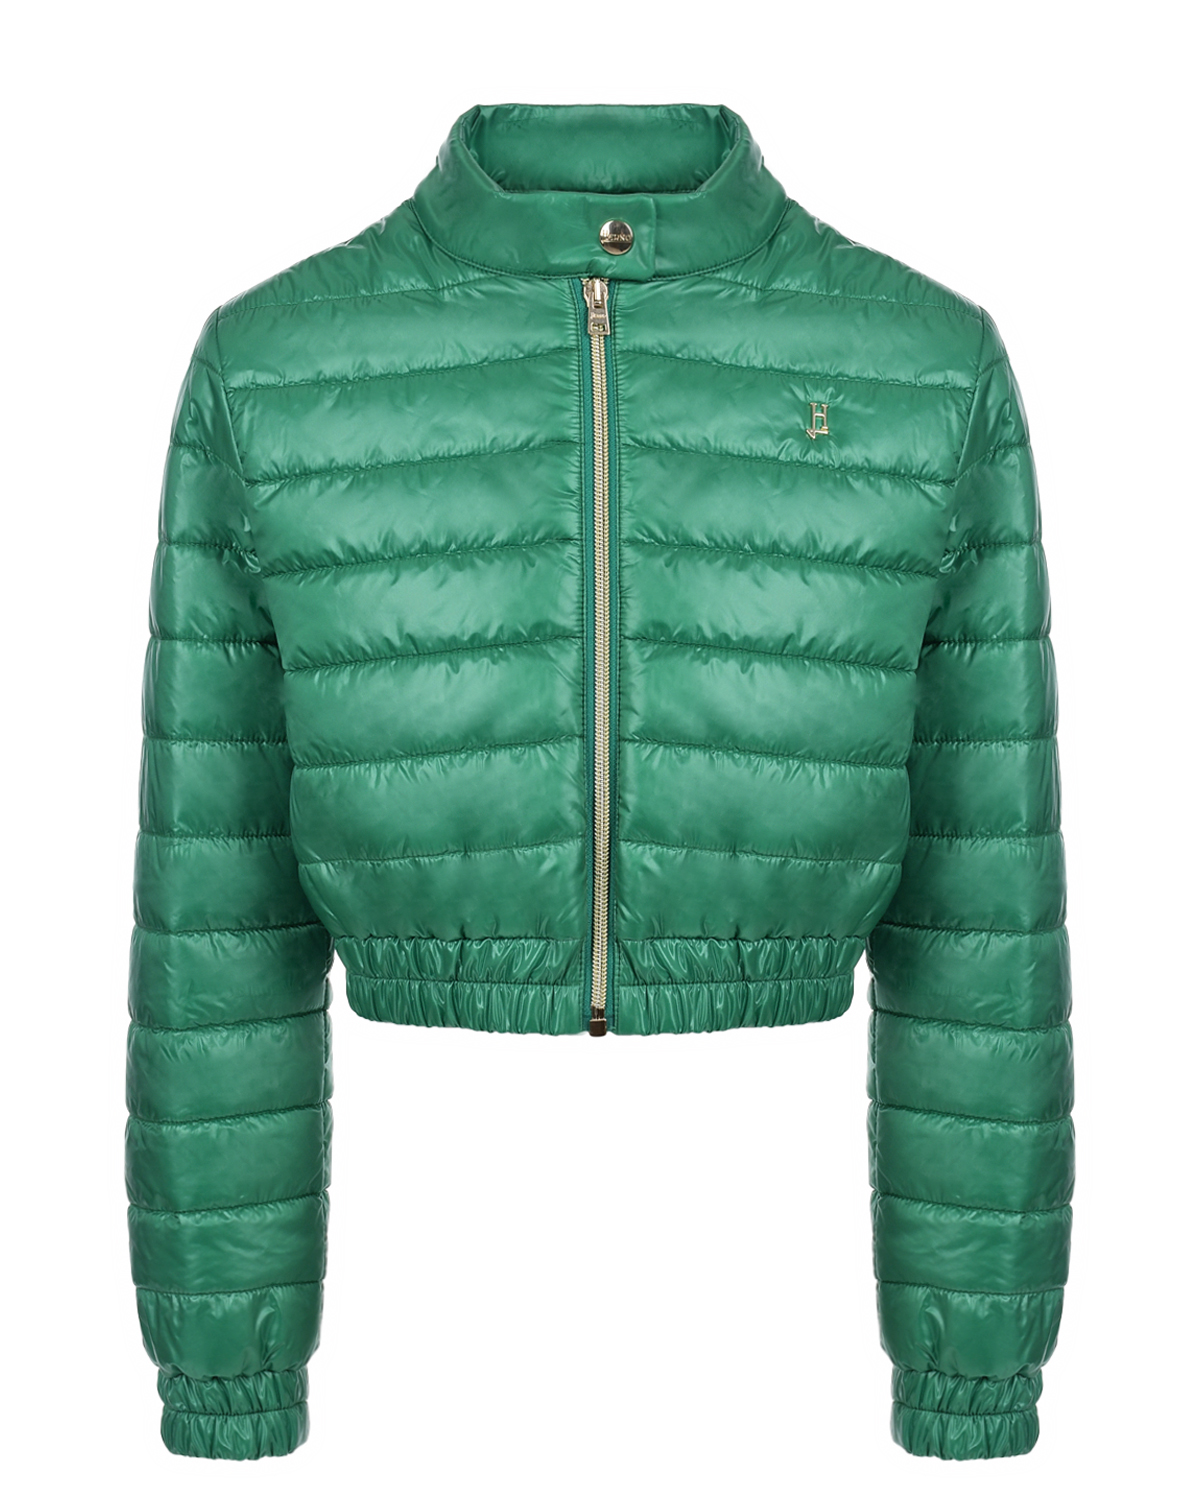 Укороченная куртка зеленого цвета Herno укороченная куртка зеленого а herno